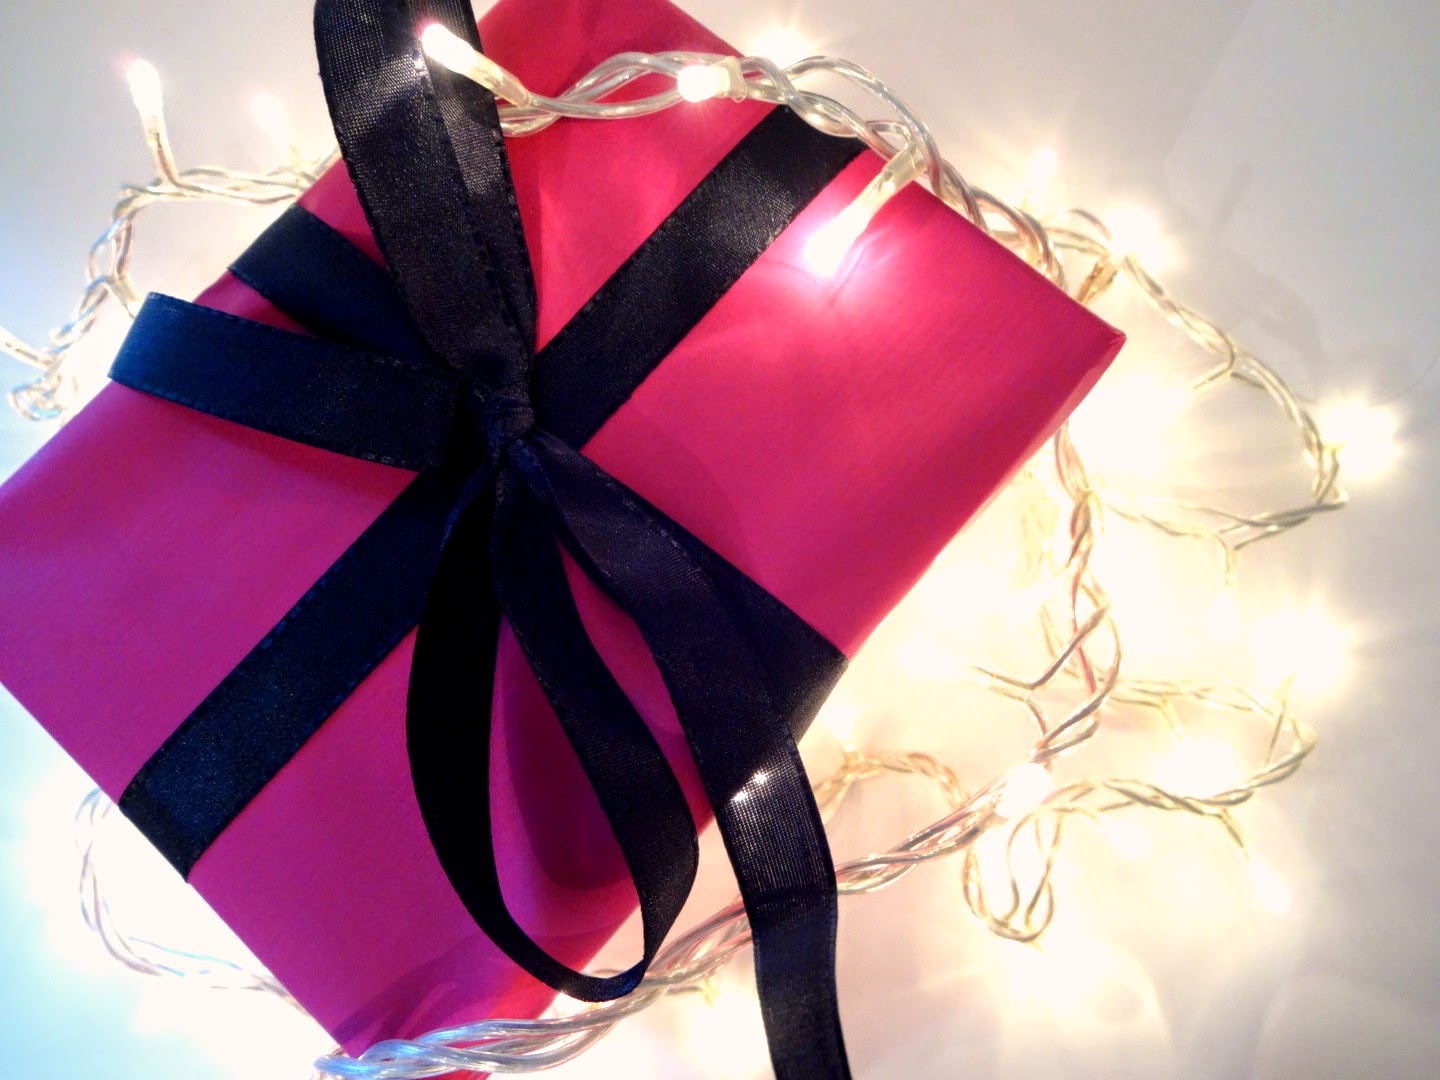 idee regalo natale per lei, idee regalo natale profumeria, natale 2014 regali, profumerie sabbioni, come impacchettare regali natale